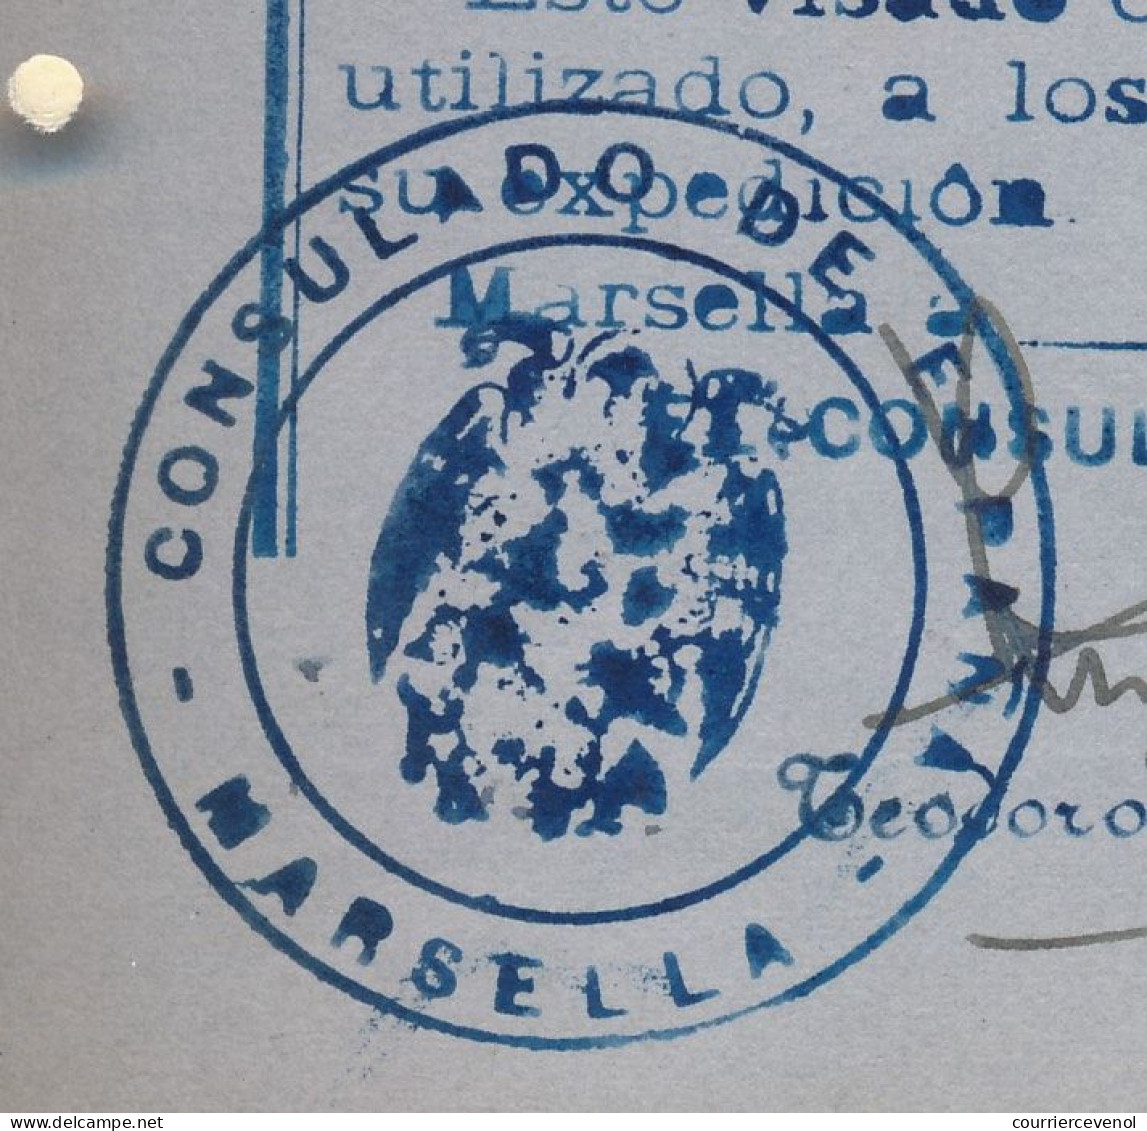 FRANCE / ESPAGNE - Passeport émis à Marseille 1954/57 - Fiscal type Daussy 2000F + Fiscaux Espagne Consulat de Marseille